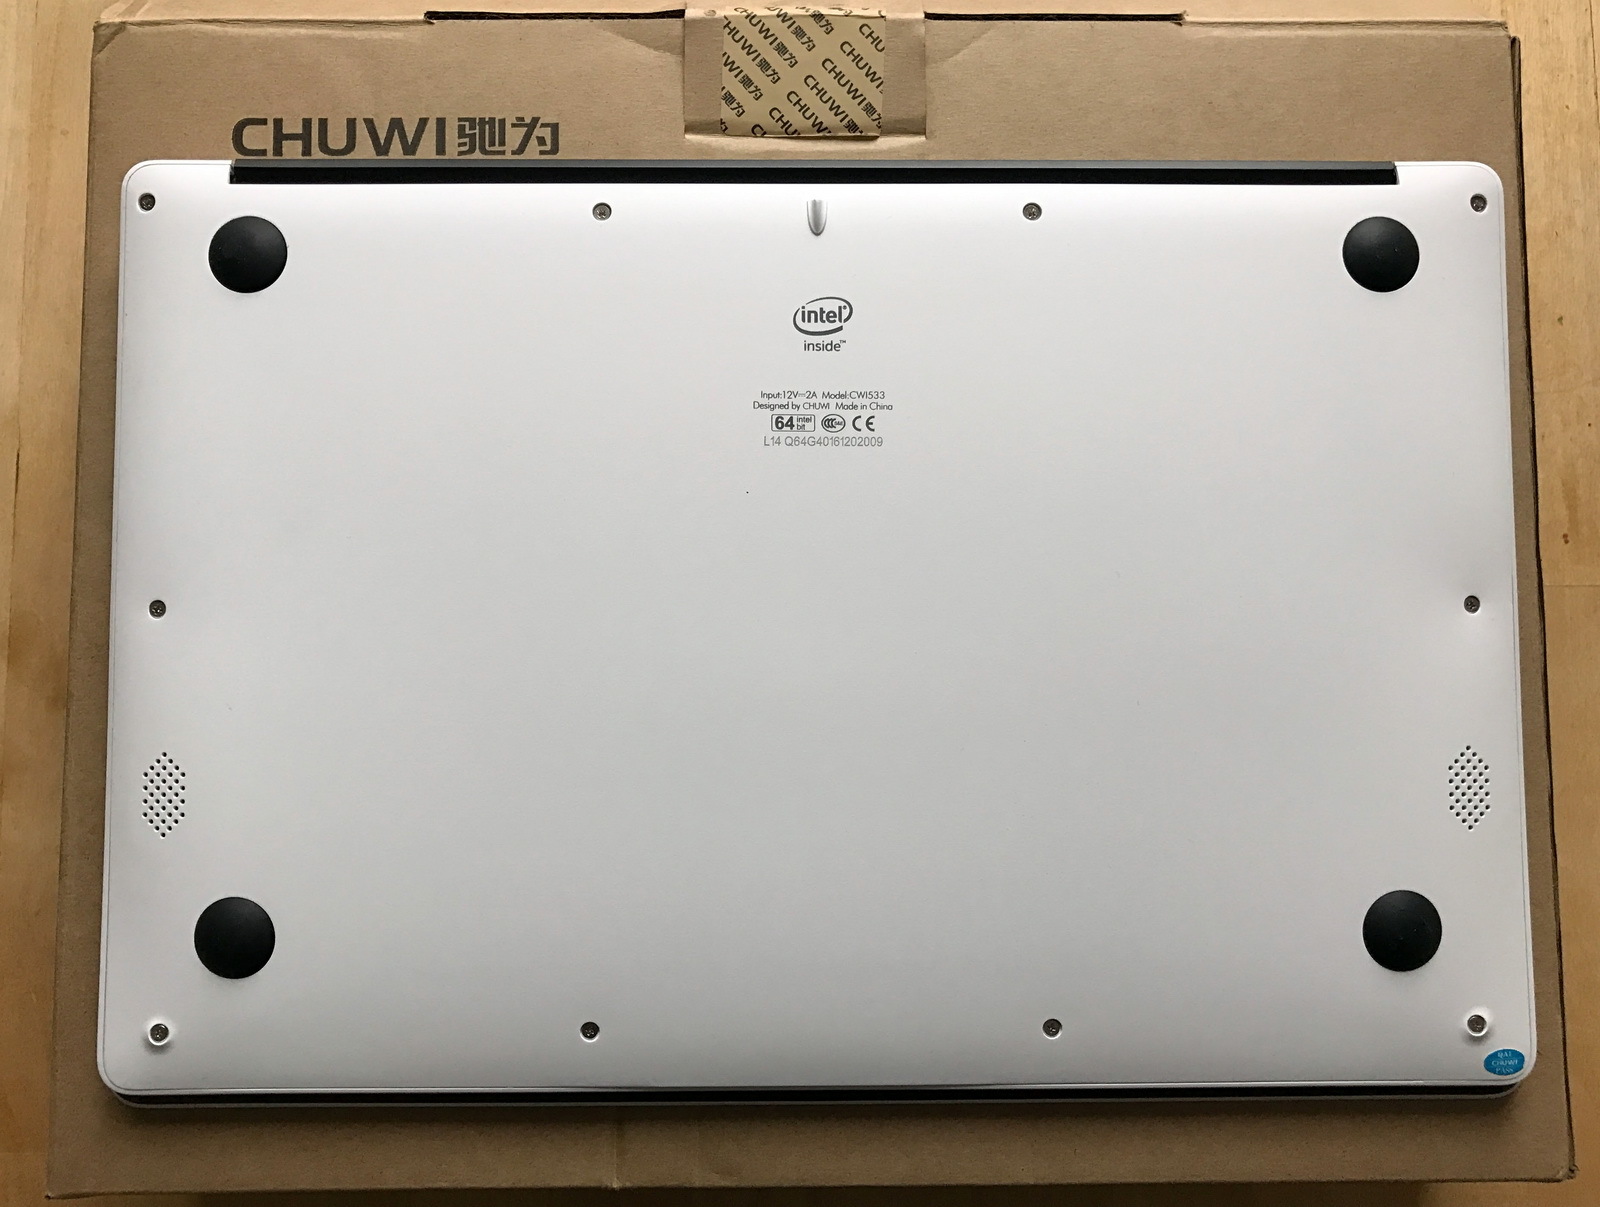 Ультрабюджетный ноутбук Chuwi LapBook 14.1: Все во имя экономии - 2